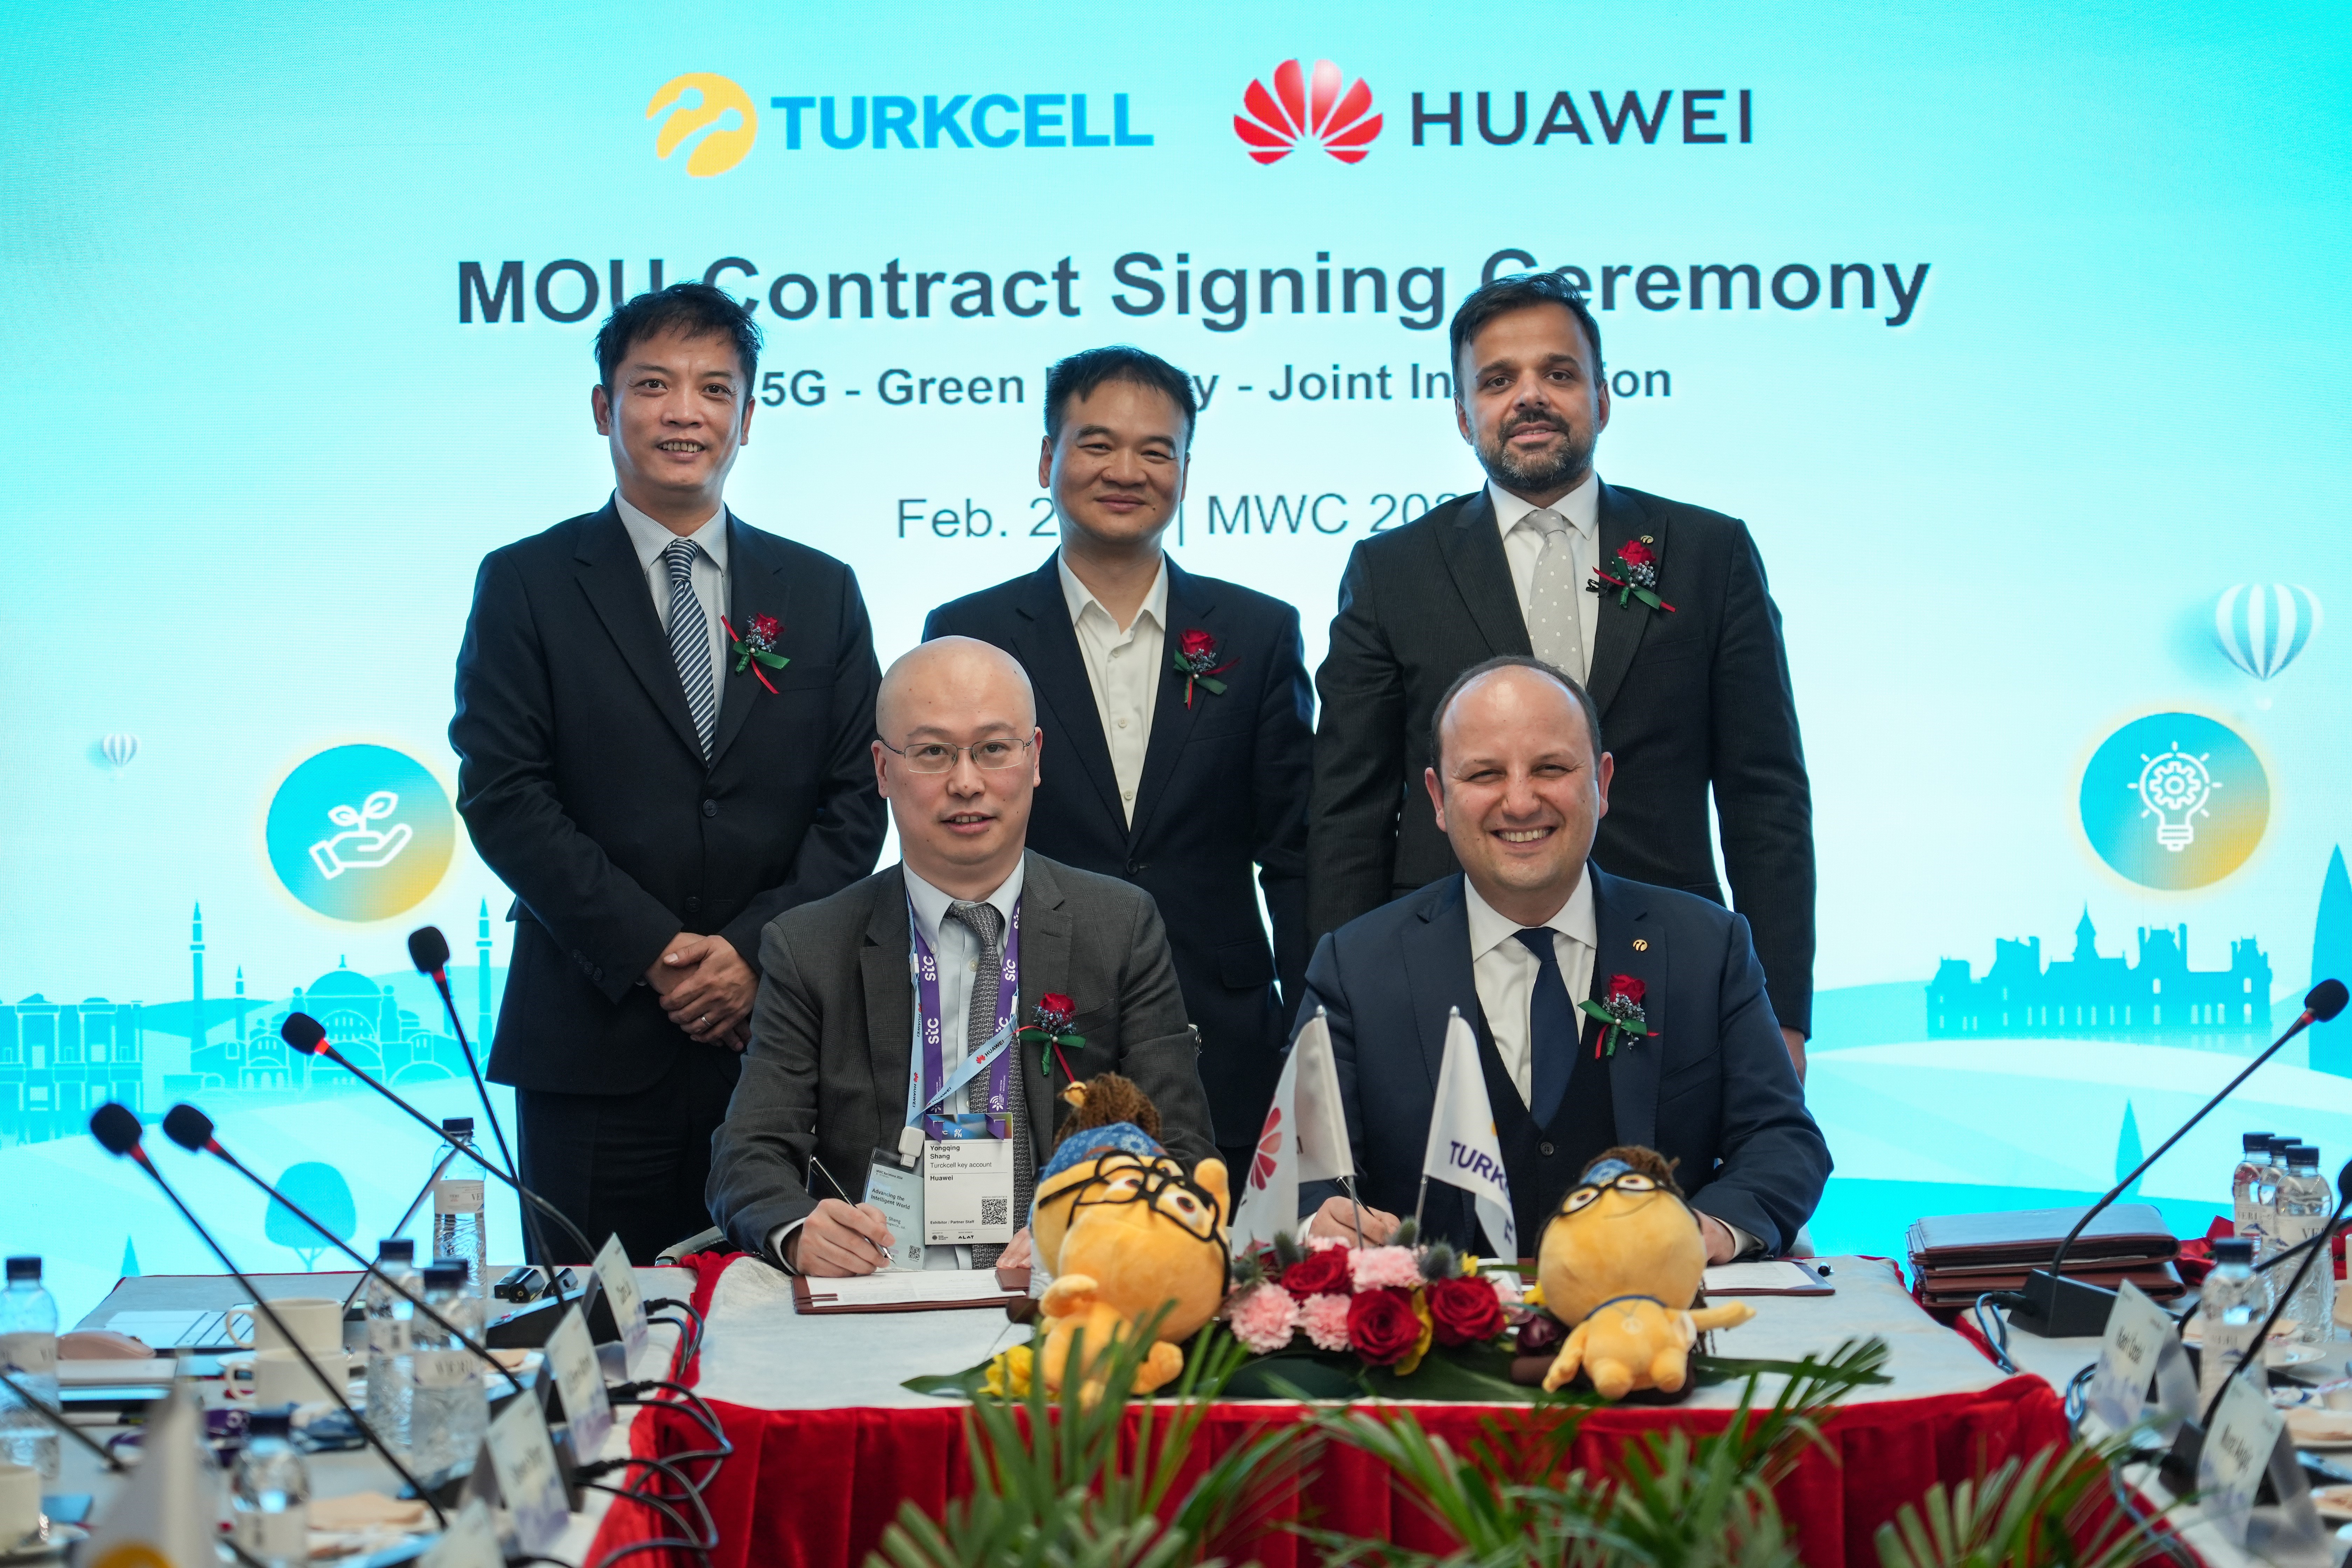 Turkcell ve Huawei'den üç ayrı alanda iş birliği!